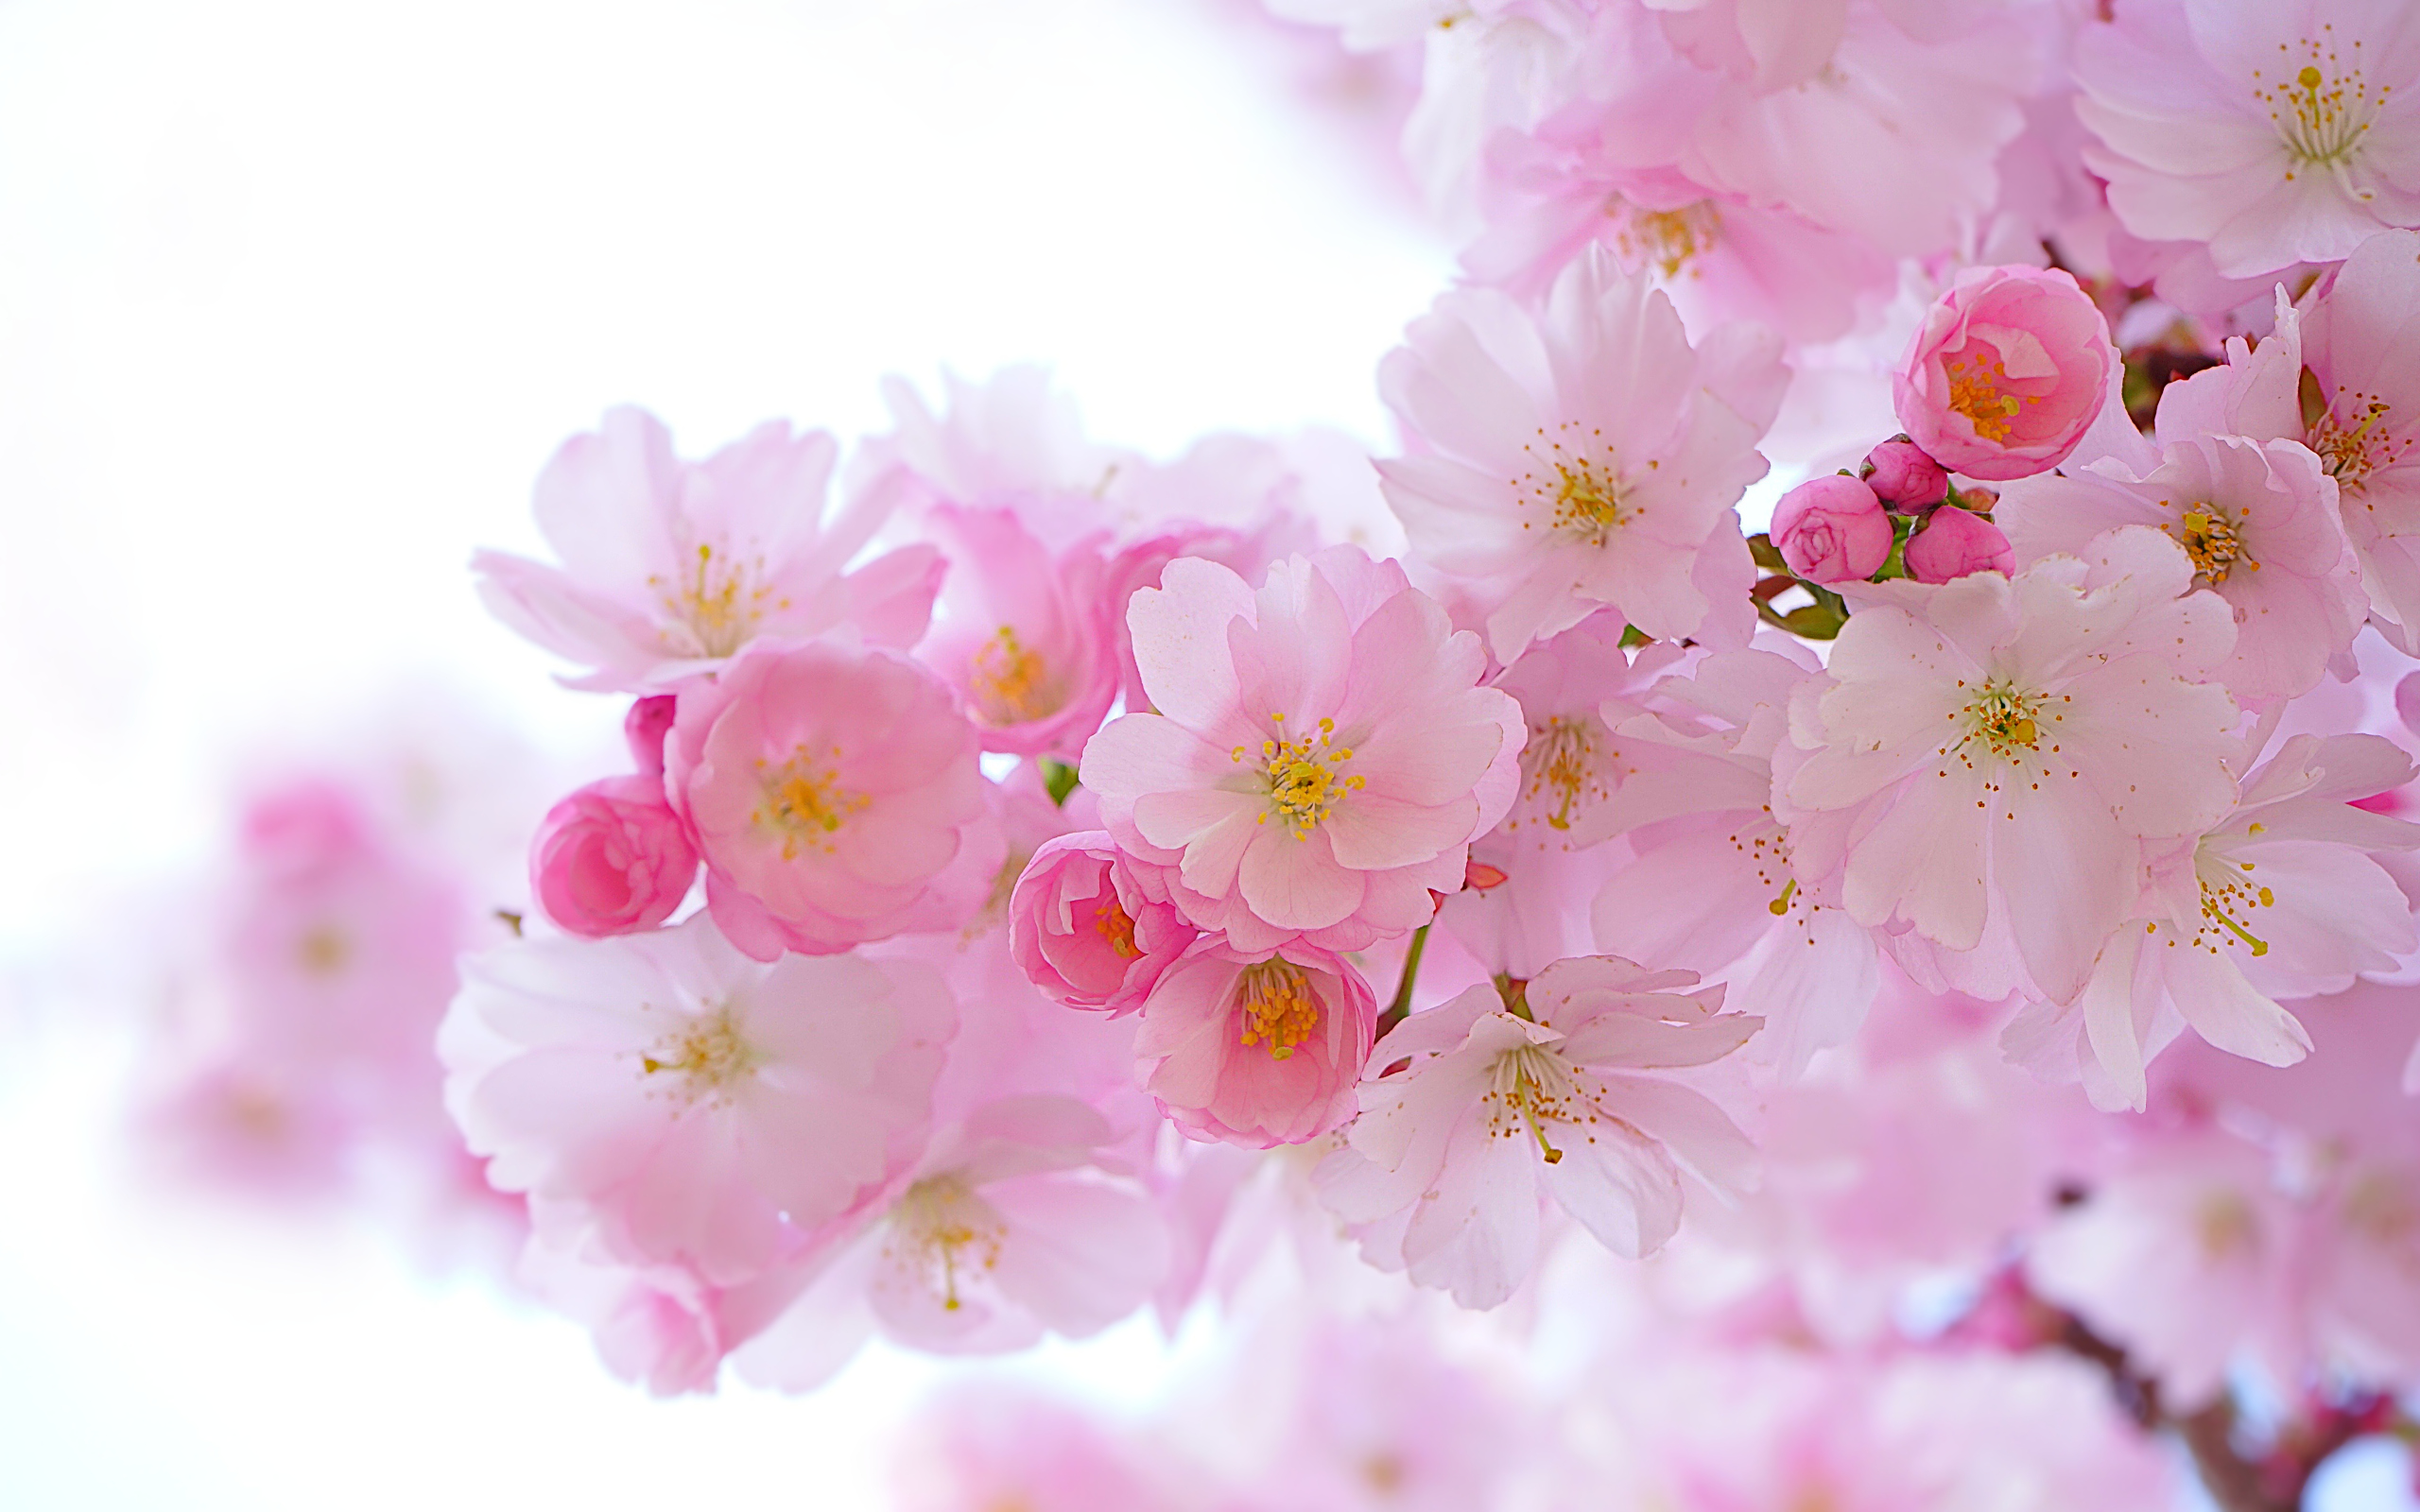 Скачать обои бесплатно Сакура, Земля/природа, Розовый Цветок, Вишня В Цвету картинка на рабочий стол ПК